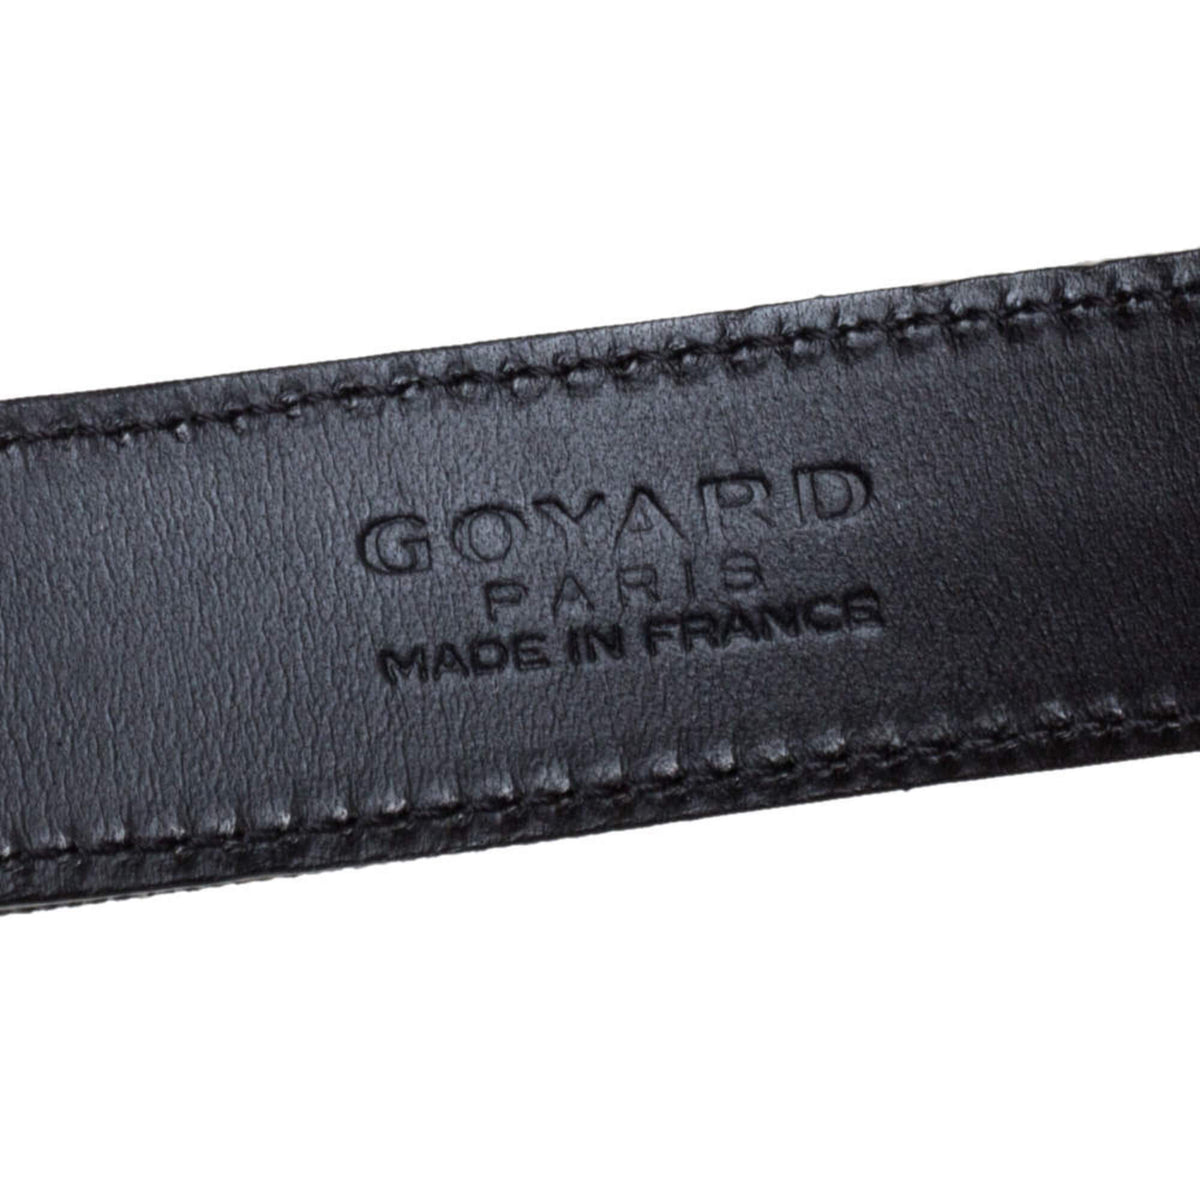 Goyard Churchill 3 Cigar Case - Goyard World